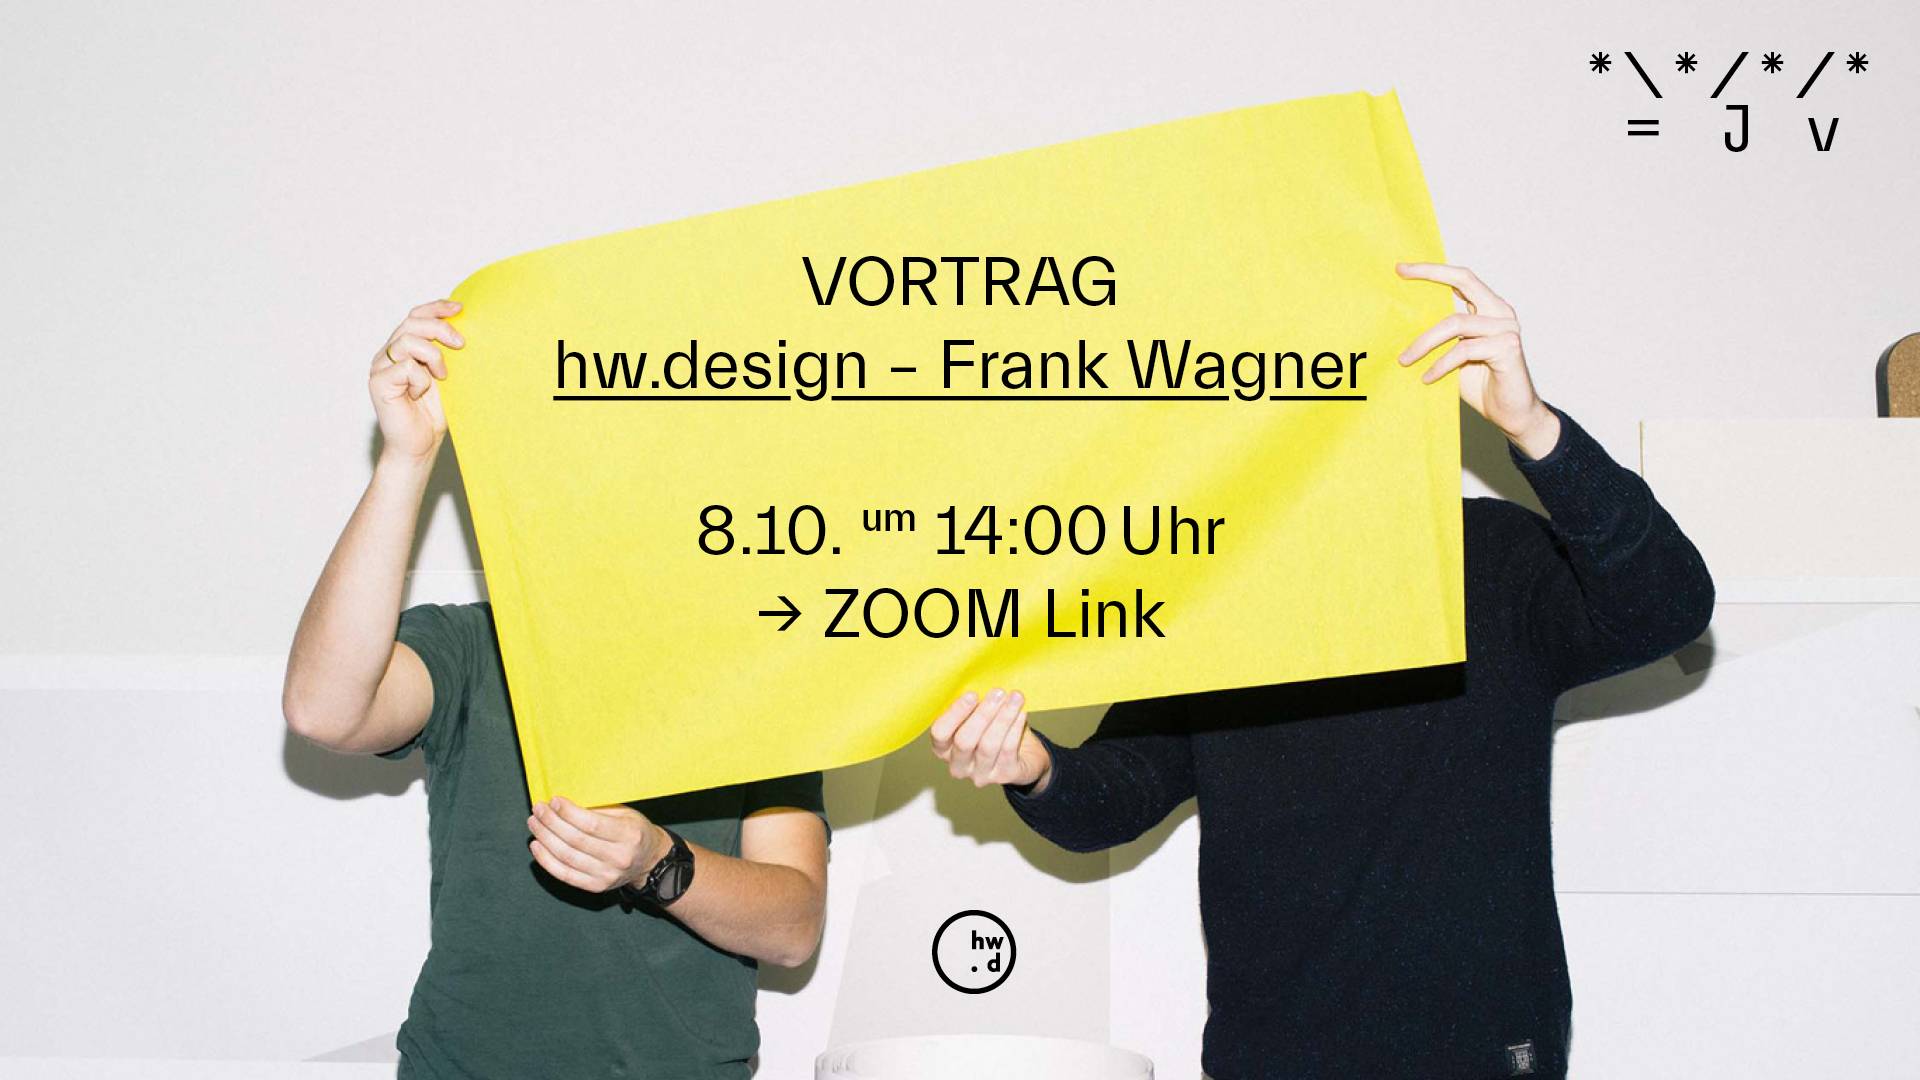 Frank Wagner Vortrag, hw.design